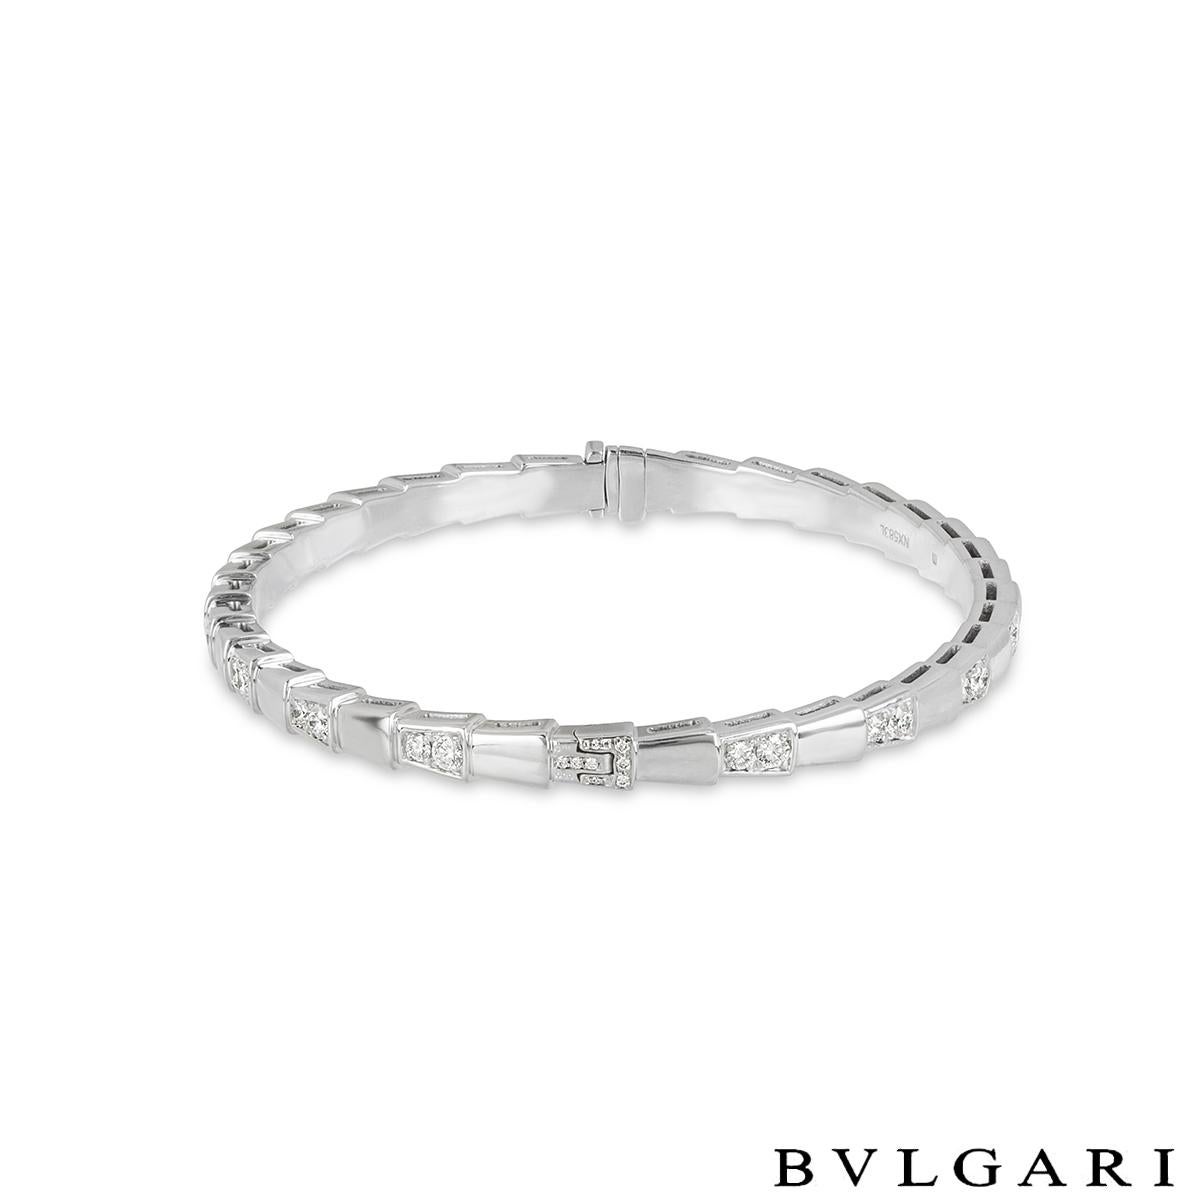 Magnifique bracelet en or blanc 18 carats de la collection Serpenti de Bvlgari, orné de diamants. Le bracelet a la forme d'un serpent et alterne magnifiquement entre des sections polies et des sections diamantées qui évoquent le mouvement en spirale